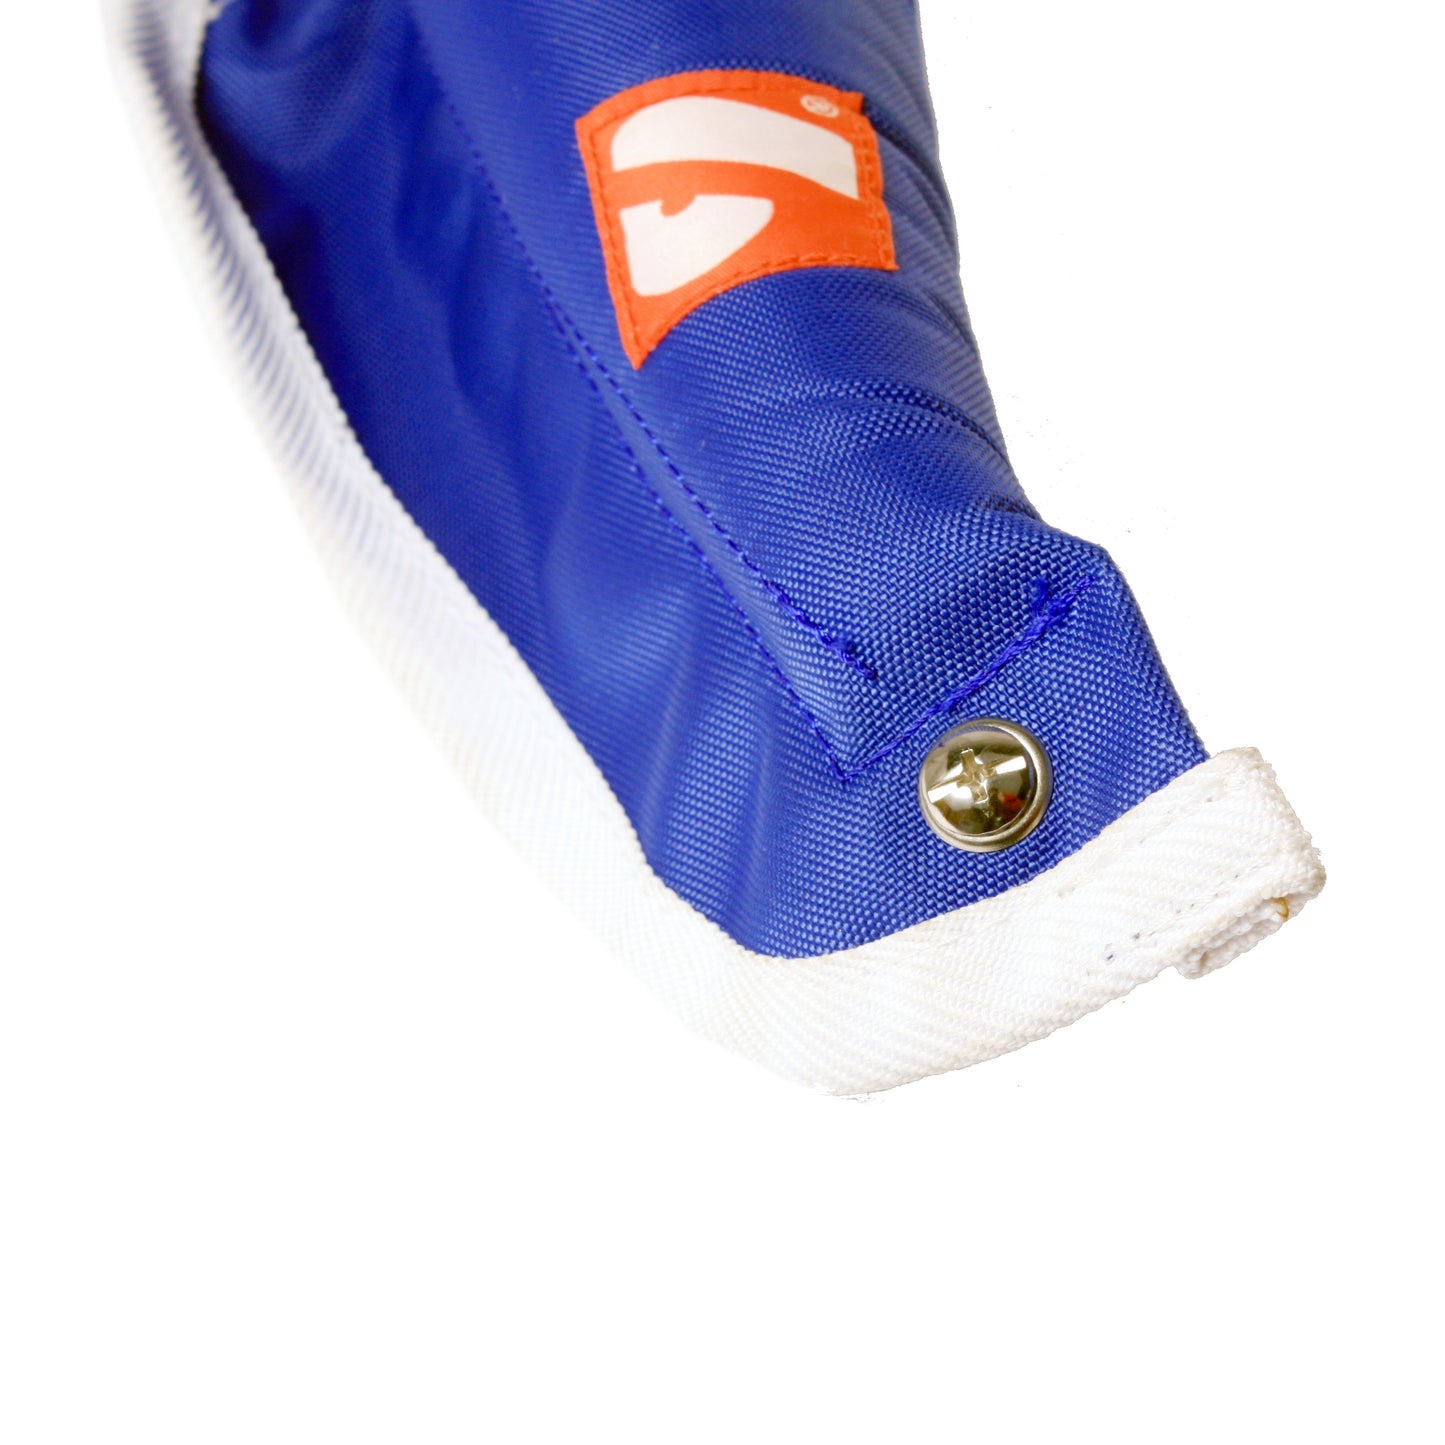 N-01 Neck Collar for Shoulder Pads, Blue